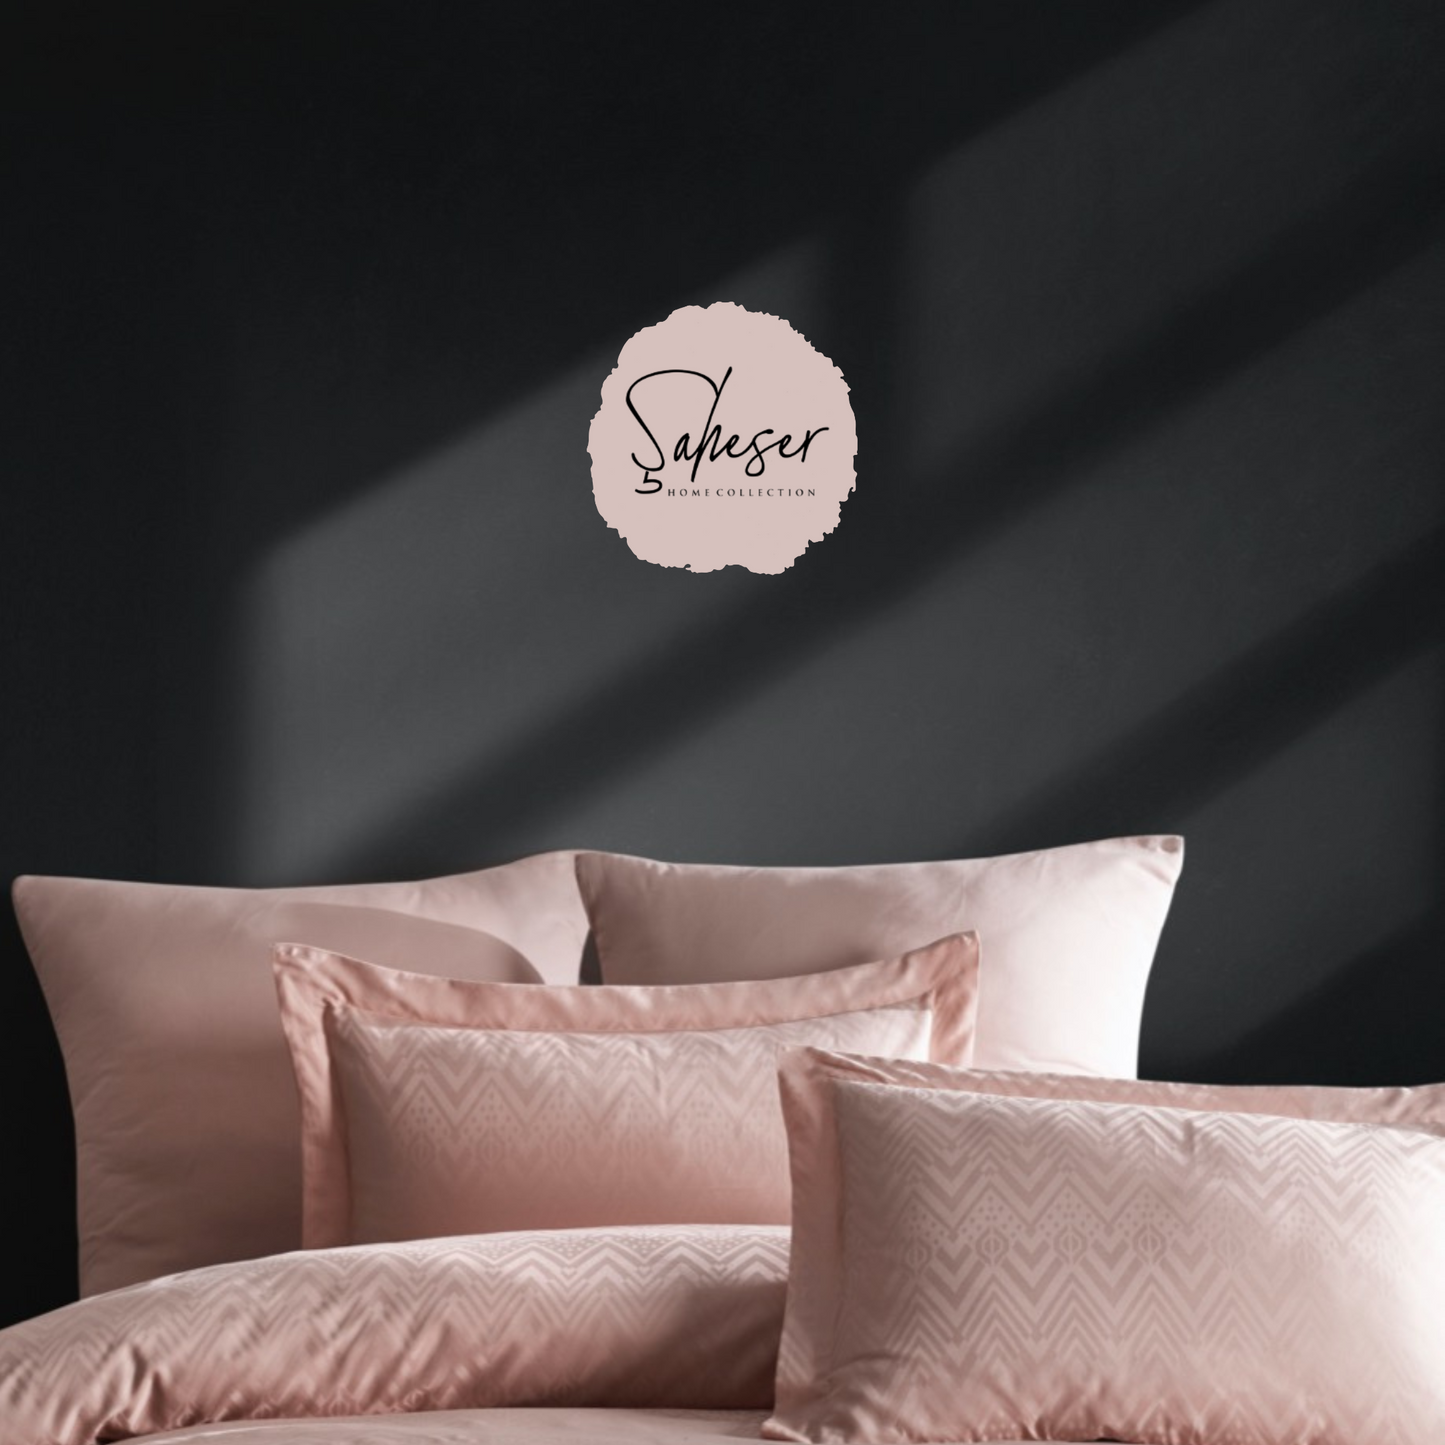 Şaheser Golden 6-teiliges Bettwäsche-Set für Doppelbetten aus 100% Baumwoll-Satin